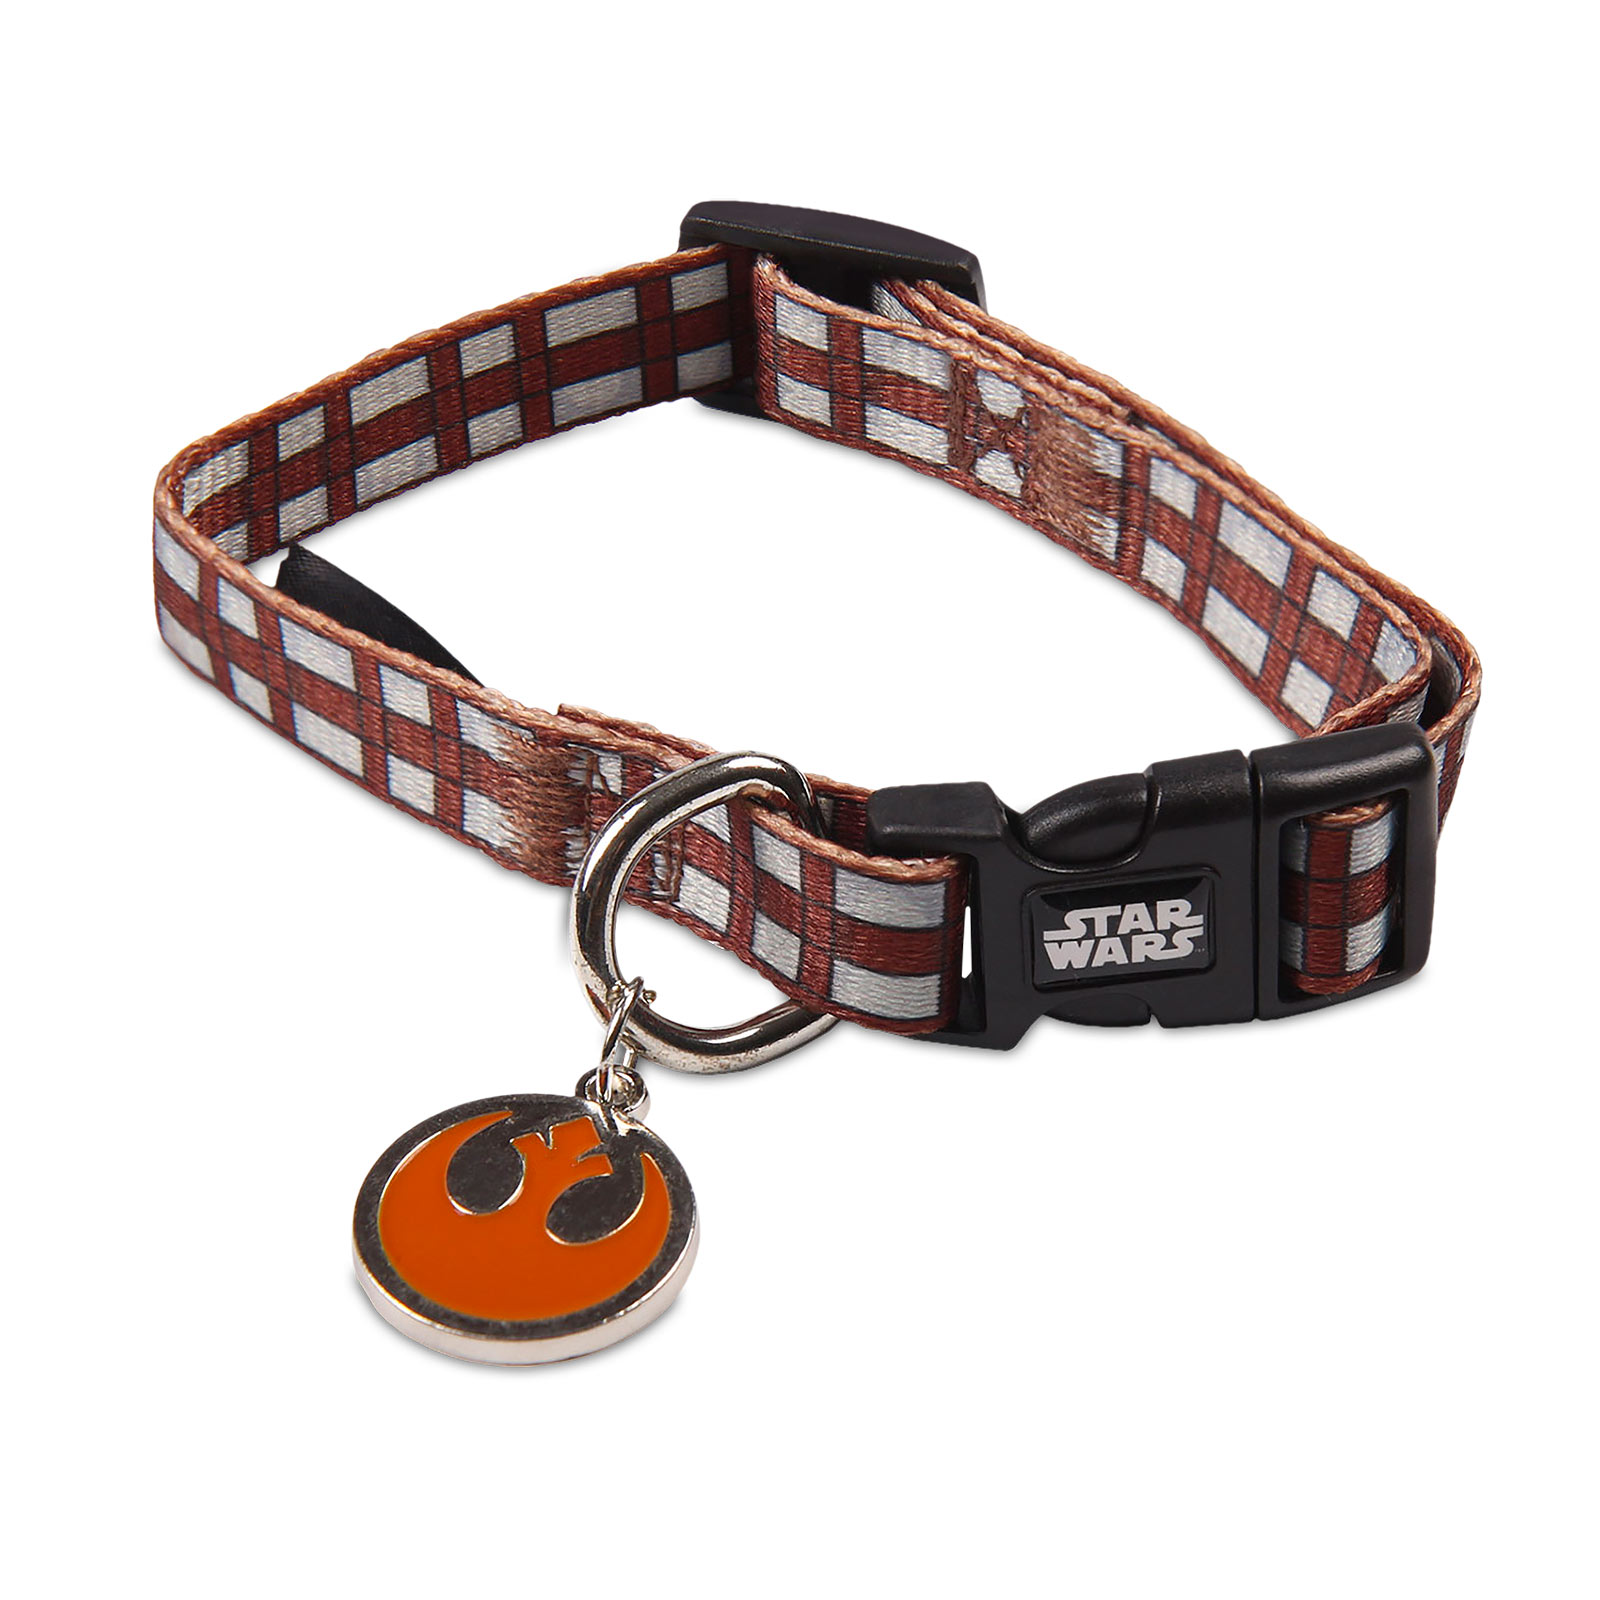 Star Wars - Chewbacca Klick-Halsband für Hunde braun